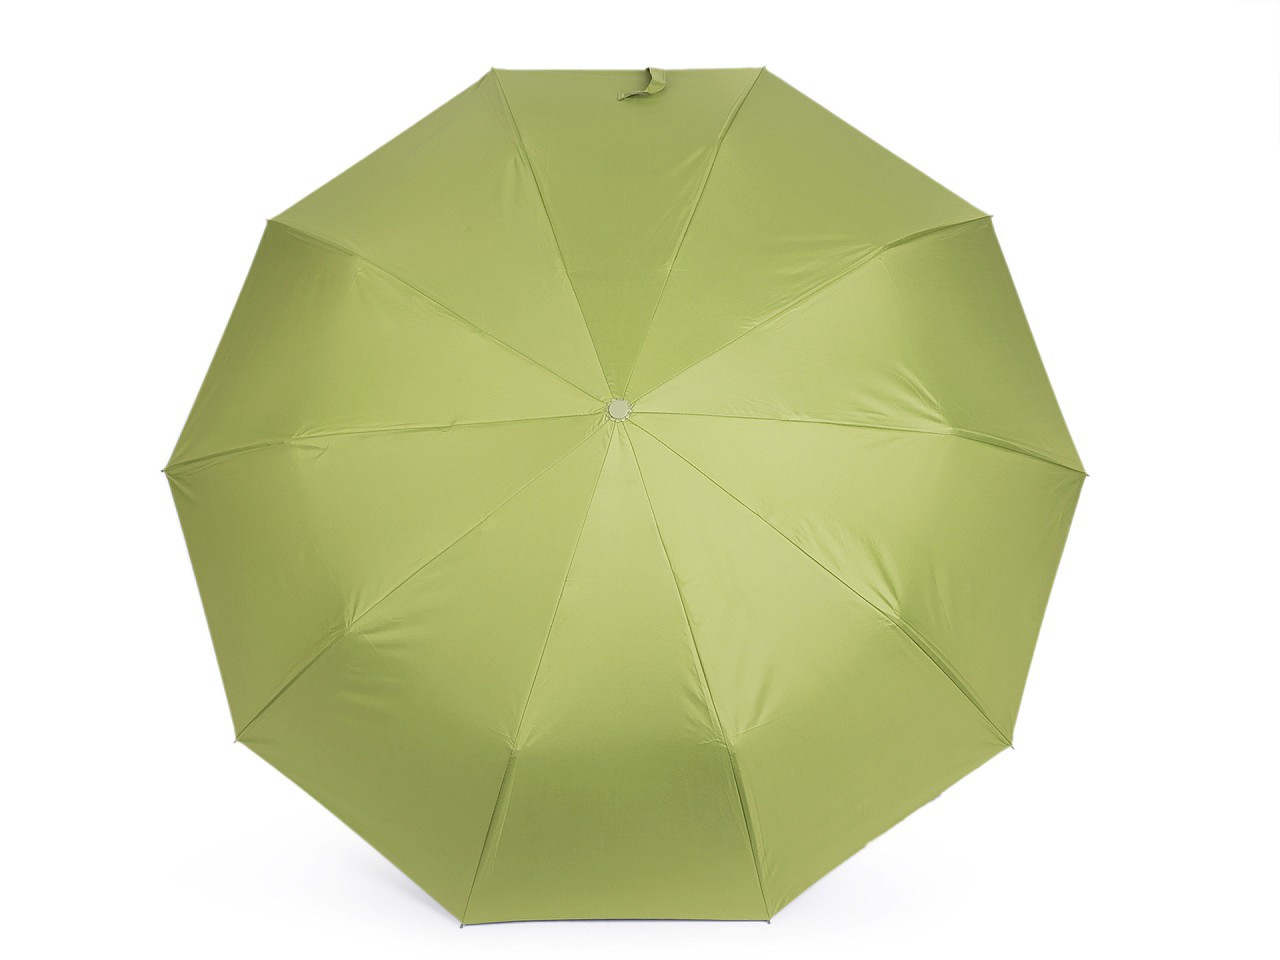 Skládací deštník s led světlem v rukojeti, barva 4 zelená sv.